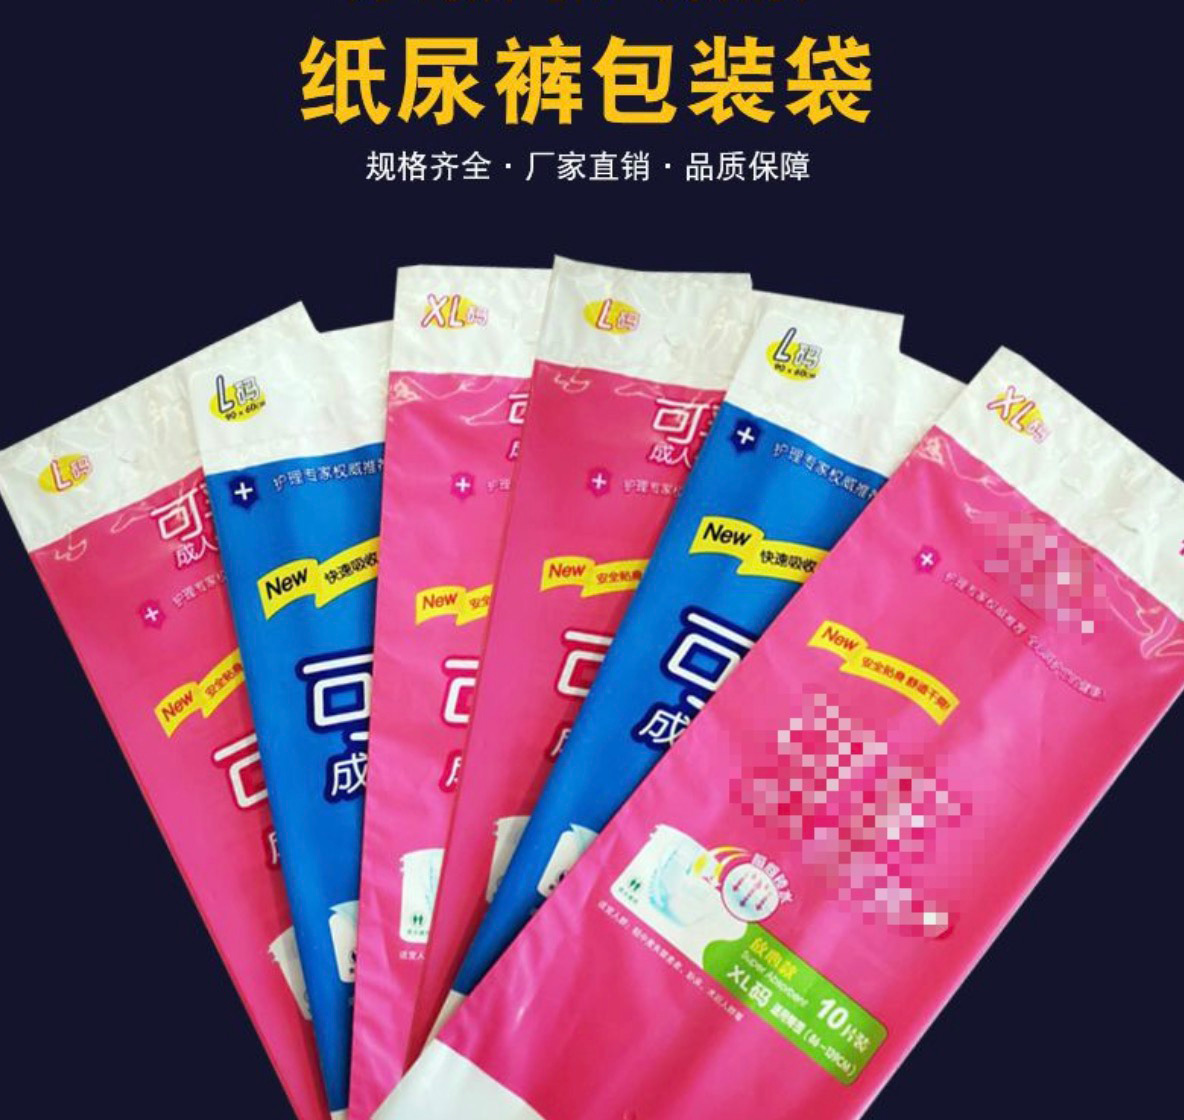 常熟市宝岛彩印包装有限公司-中国上海国际包装展展览会